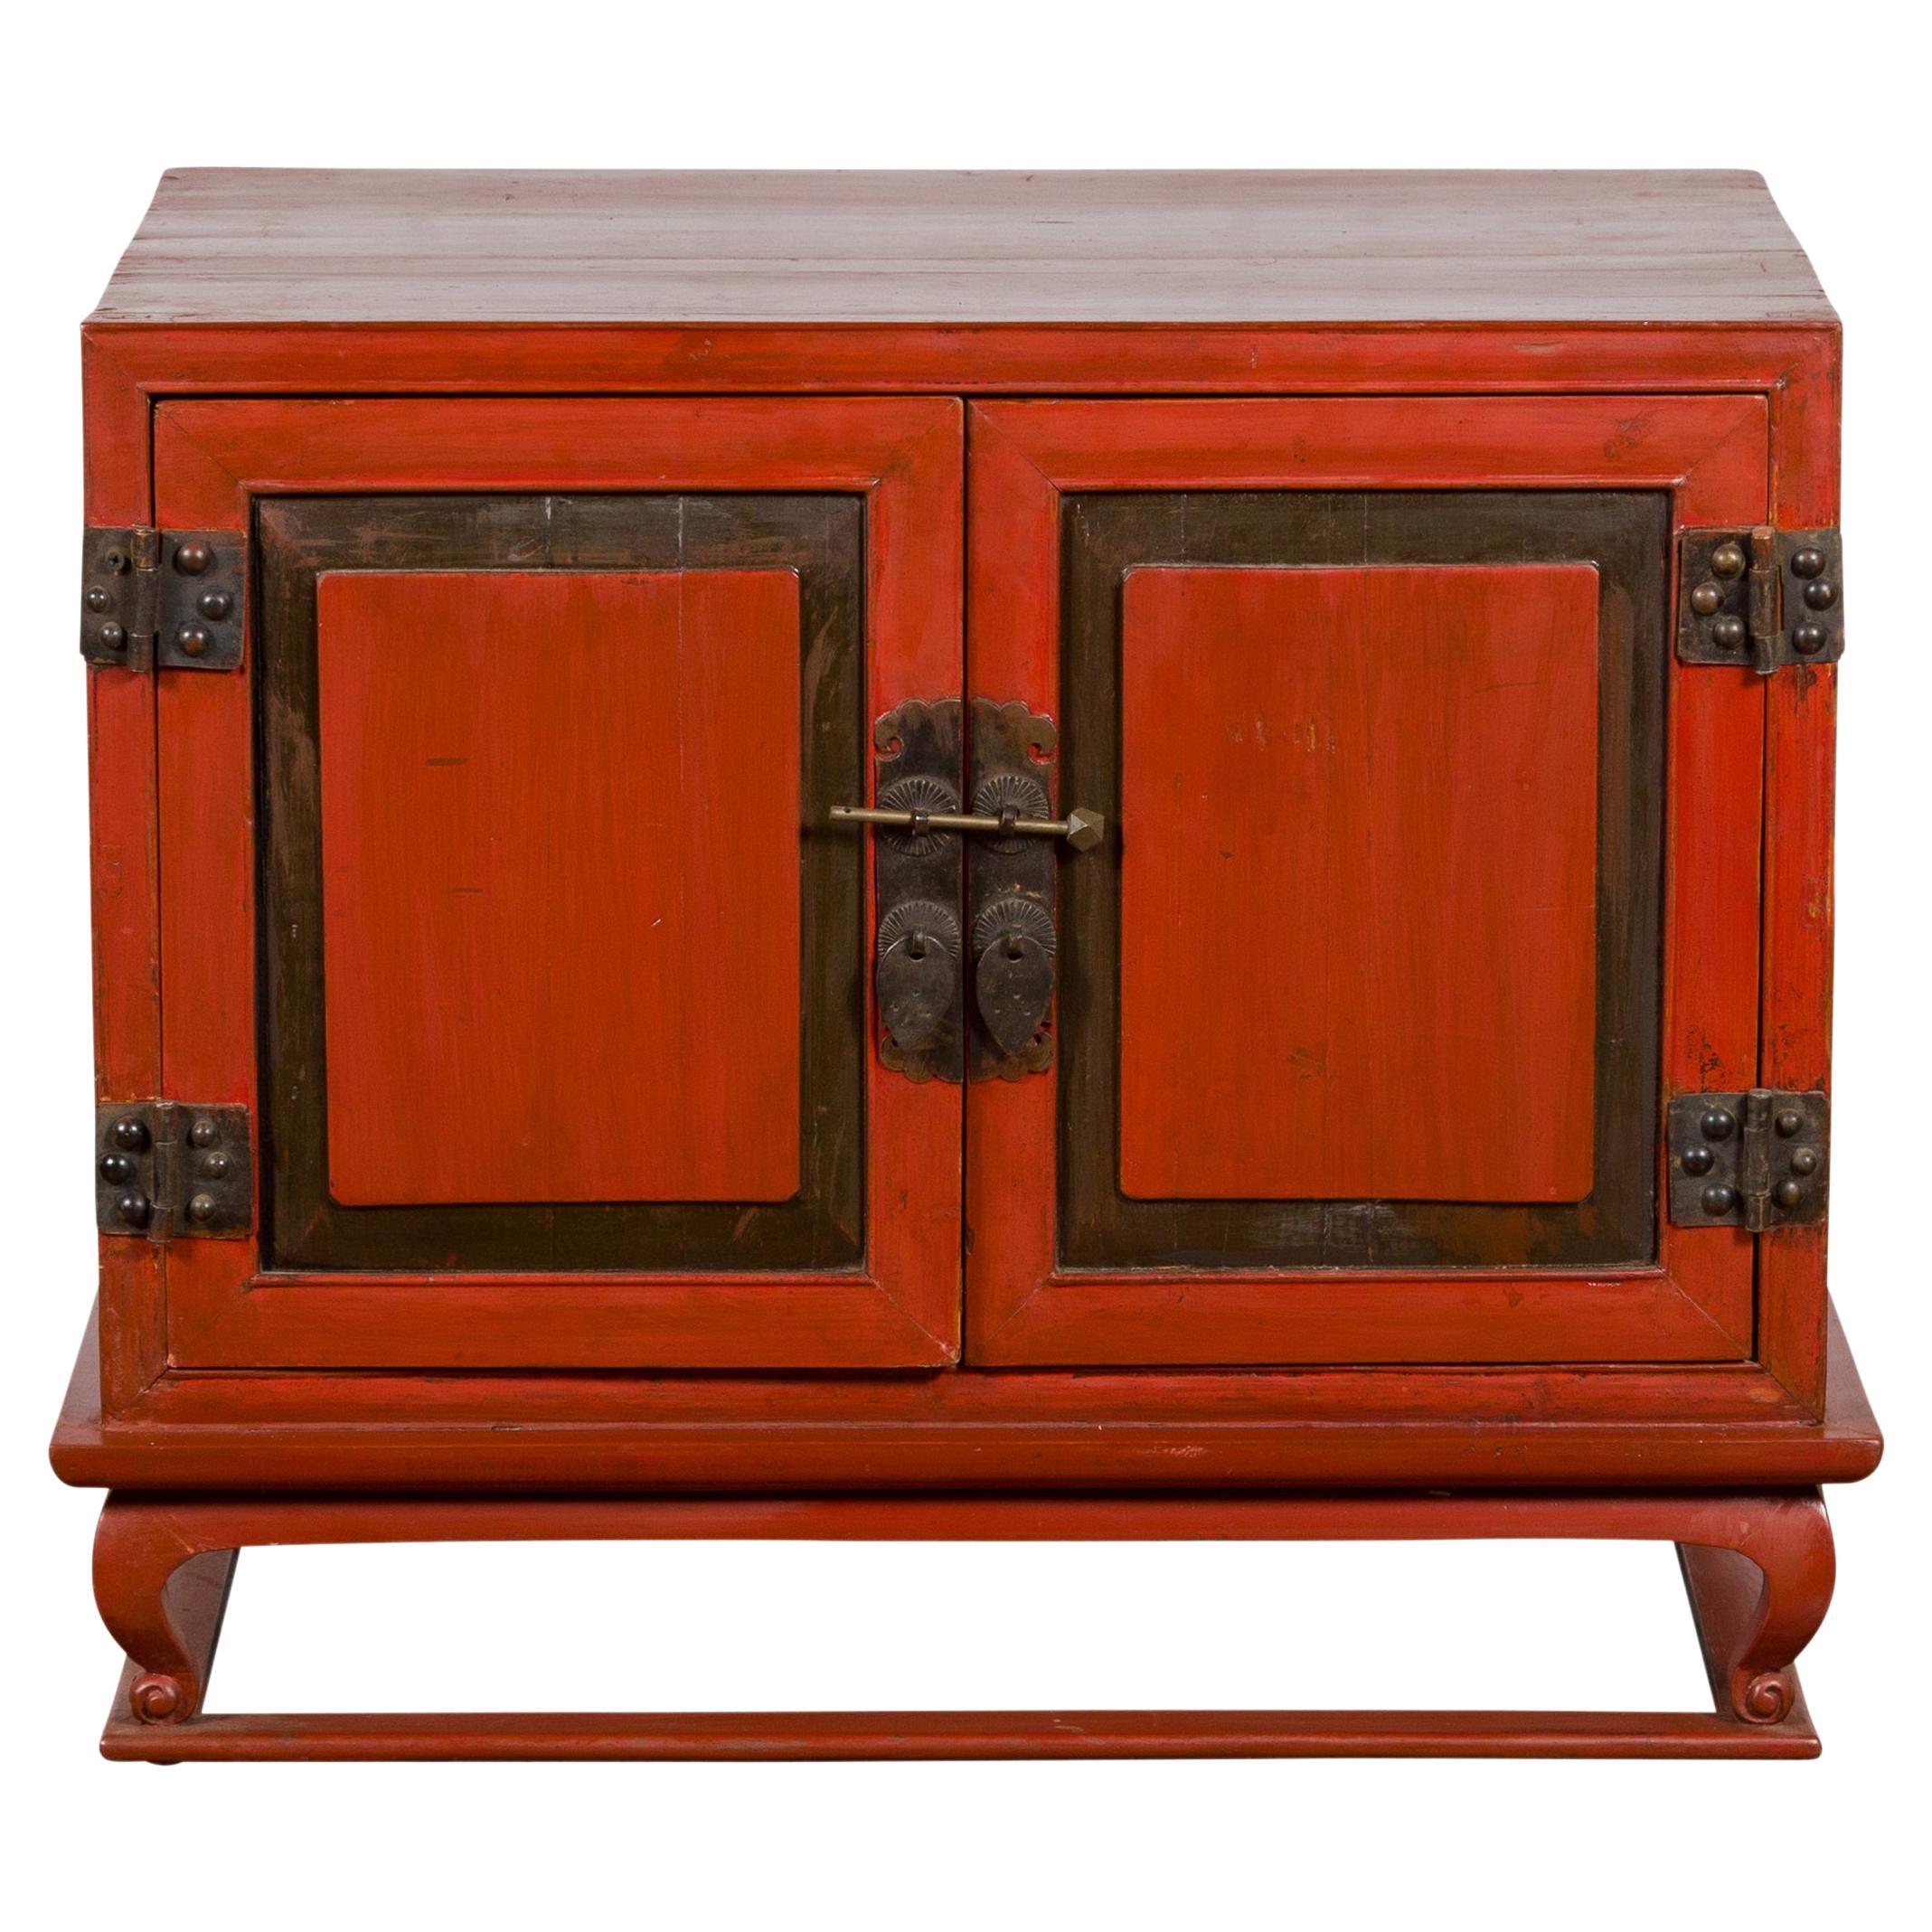 Petit meuble de rangement chinois vintage en laque rouge avec accents foncés et pieds cabriole